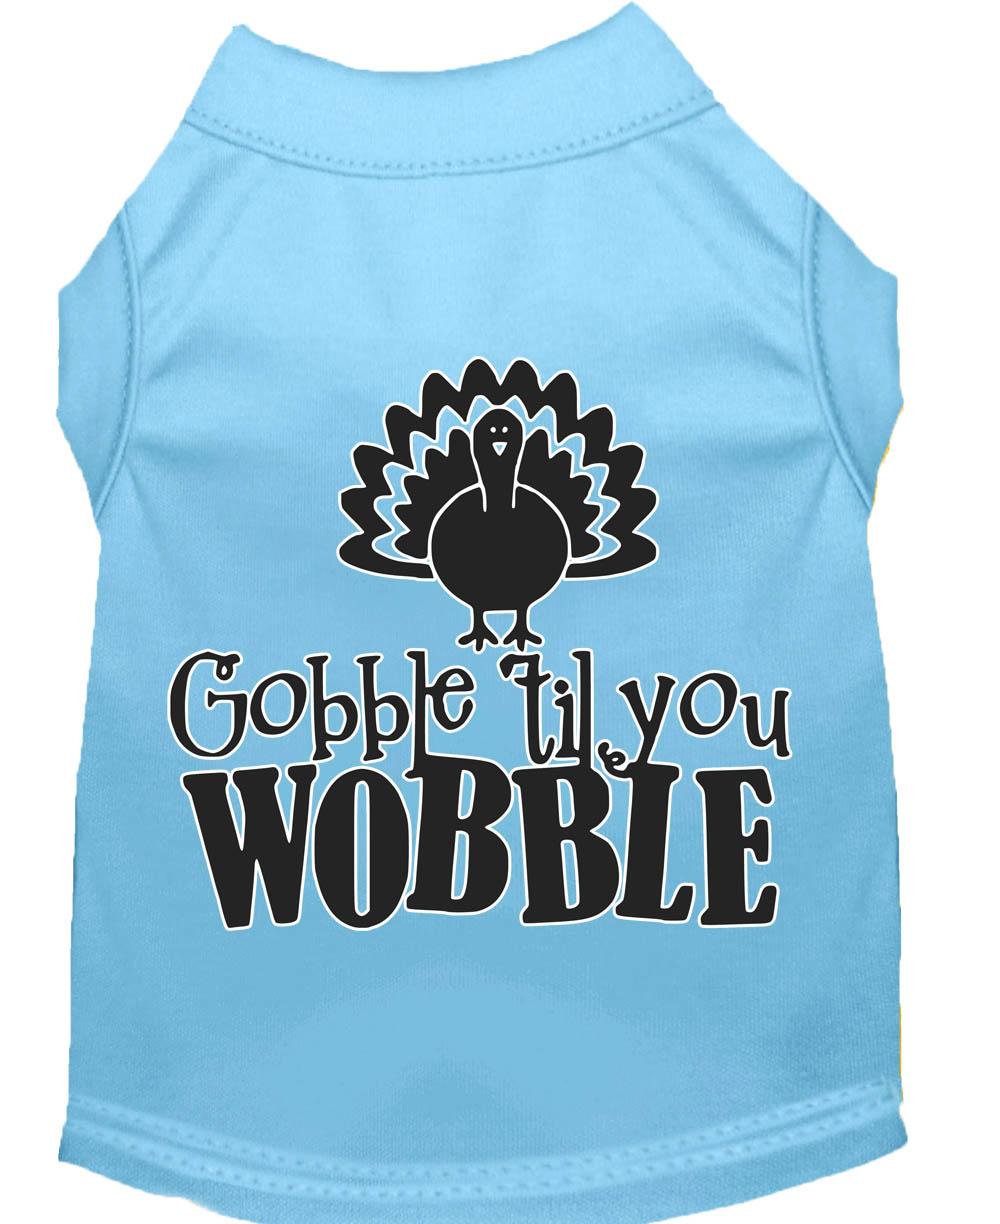 Gobble til You Wobble Screen Print Dog Shirt Baby Blue Med